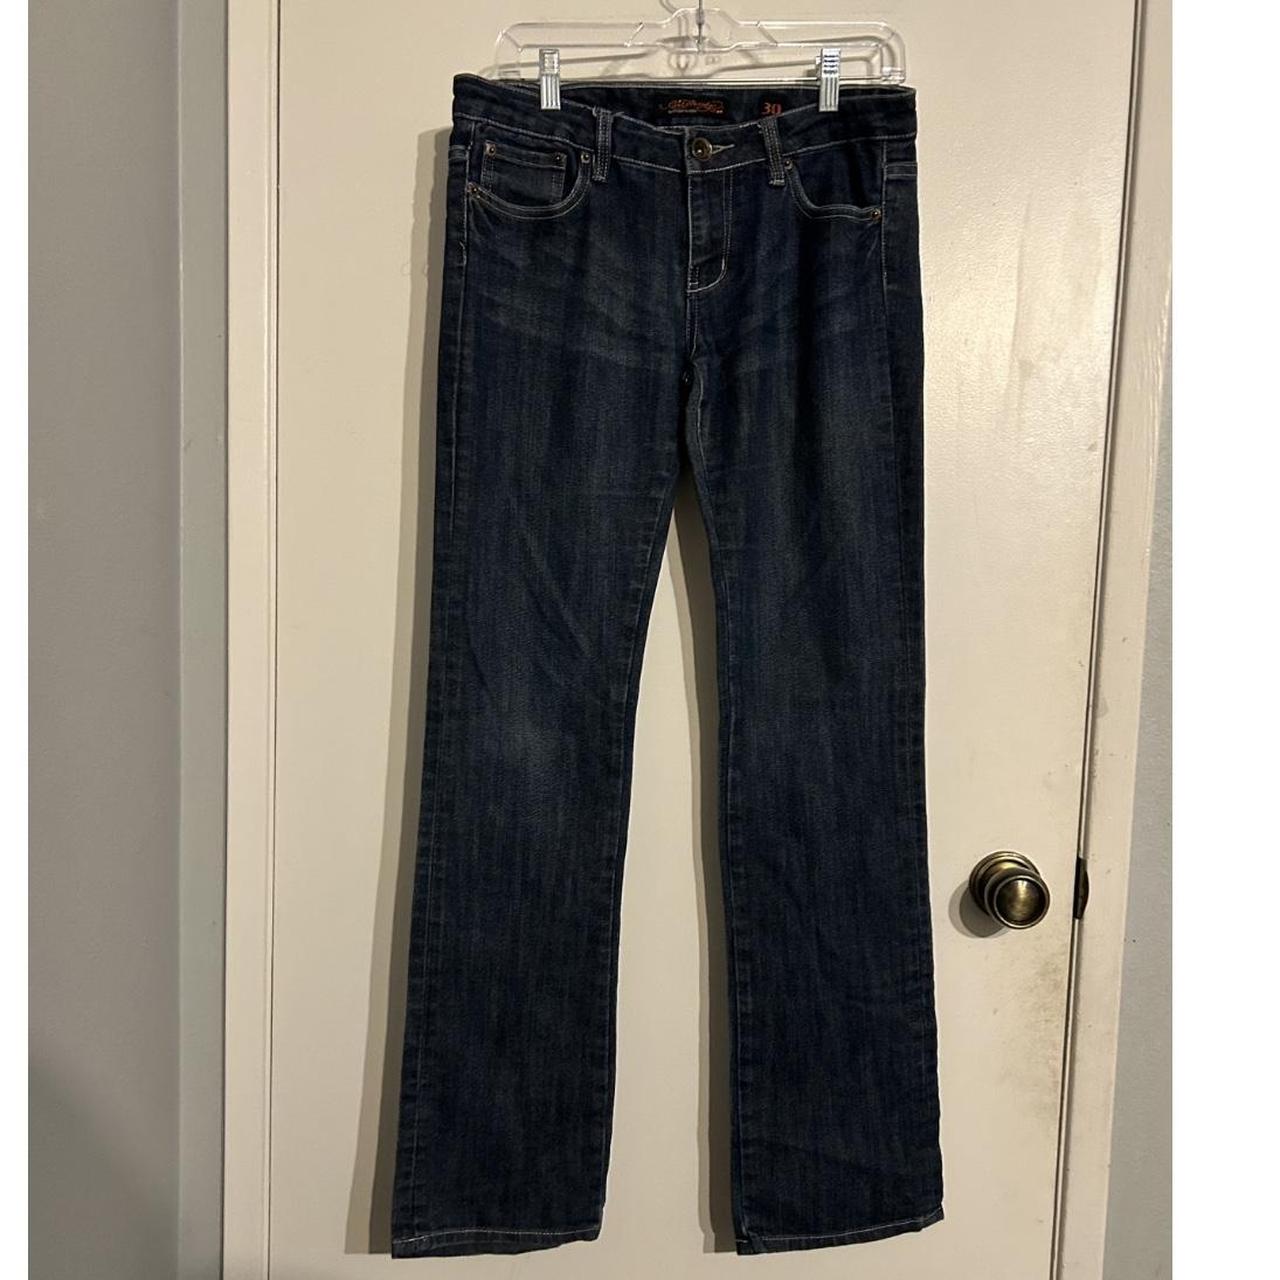 Vintage Ed Hardy Coy fish jeans *tab is peeling* - Depop